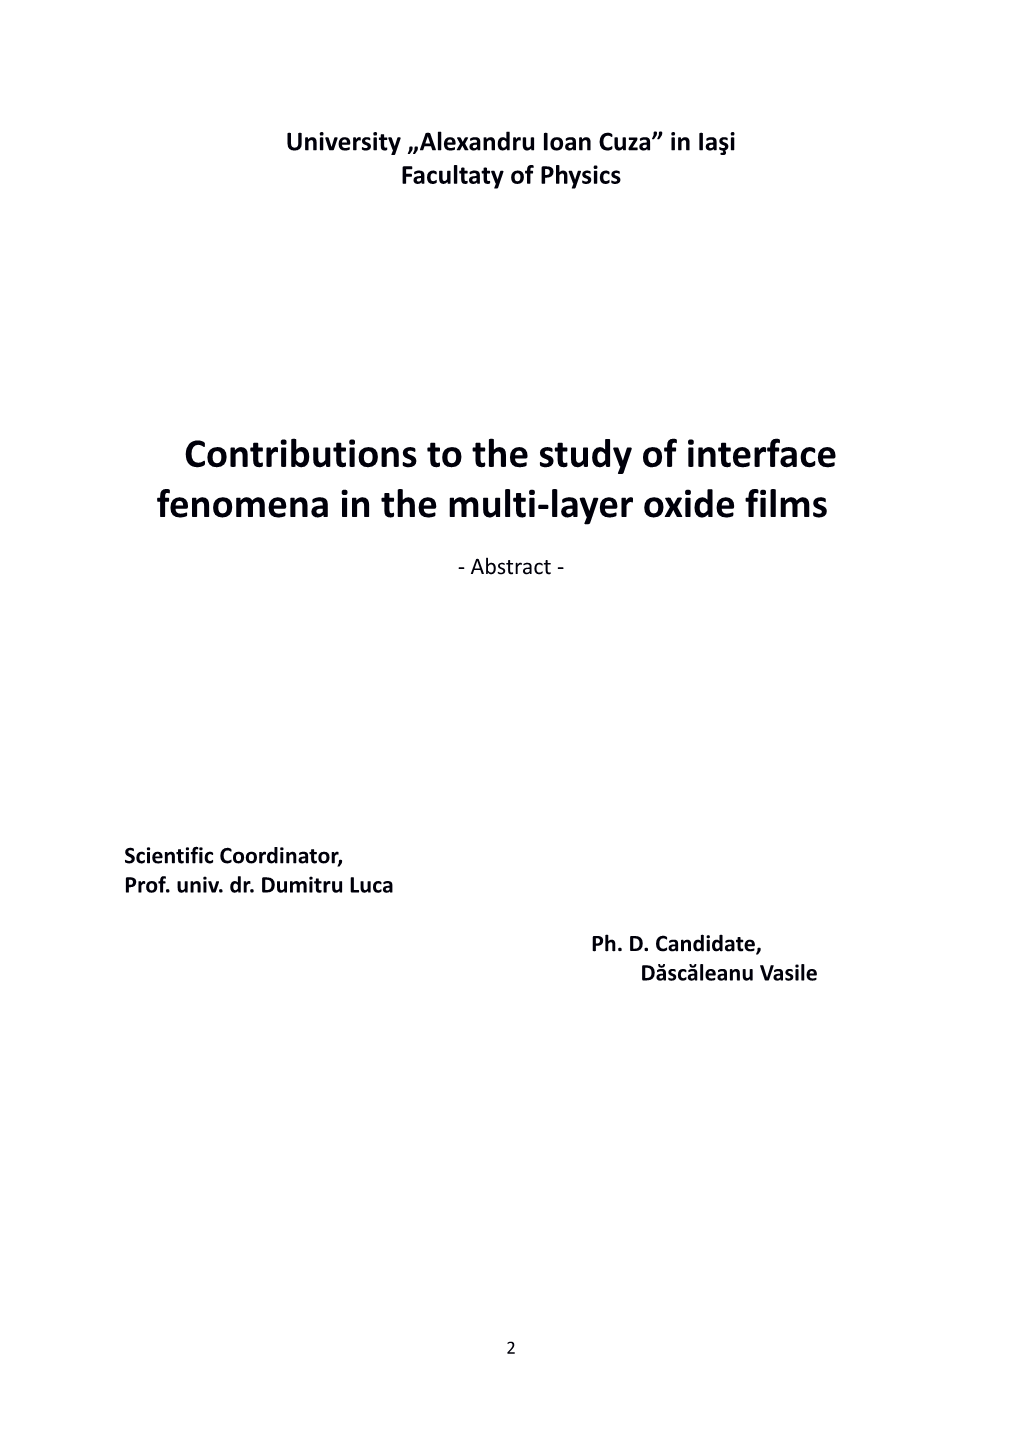 Contribuţii La Studiul Fenomenelor De Interfaţă În Filmele Oxidice Multi-Strat